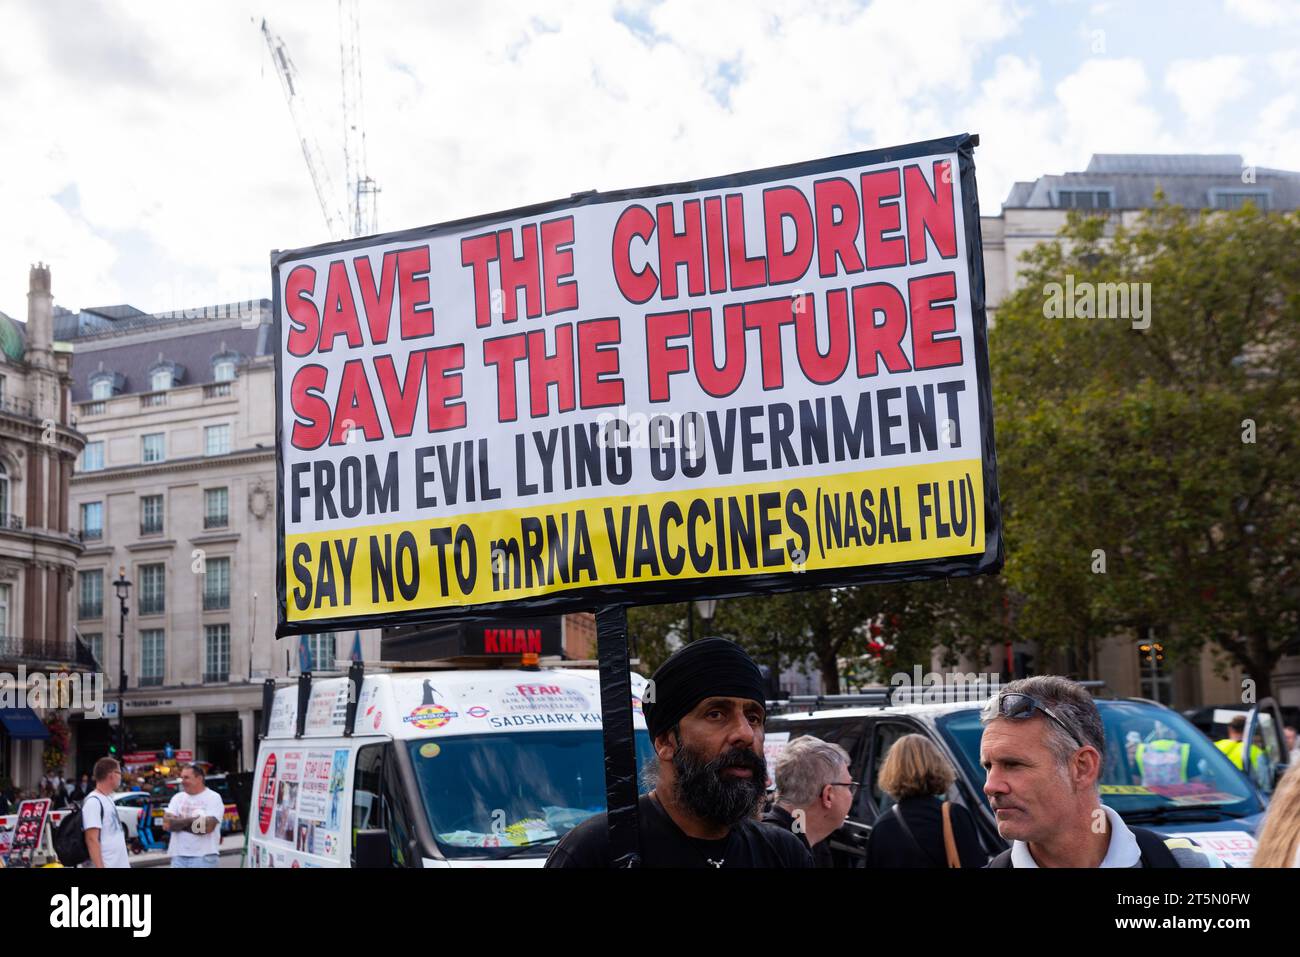 Affiche de protestation contre les vaccins, indiquant que le gouvernement ment. Anti vax pour les enfants. Sauvez les enfants, sauvez l'avenir. Dites non aux vaccins ARNm Banque D'Images